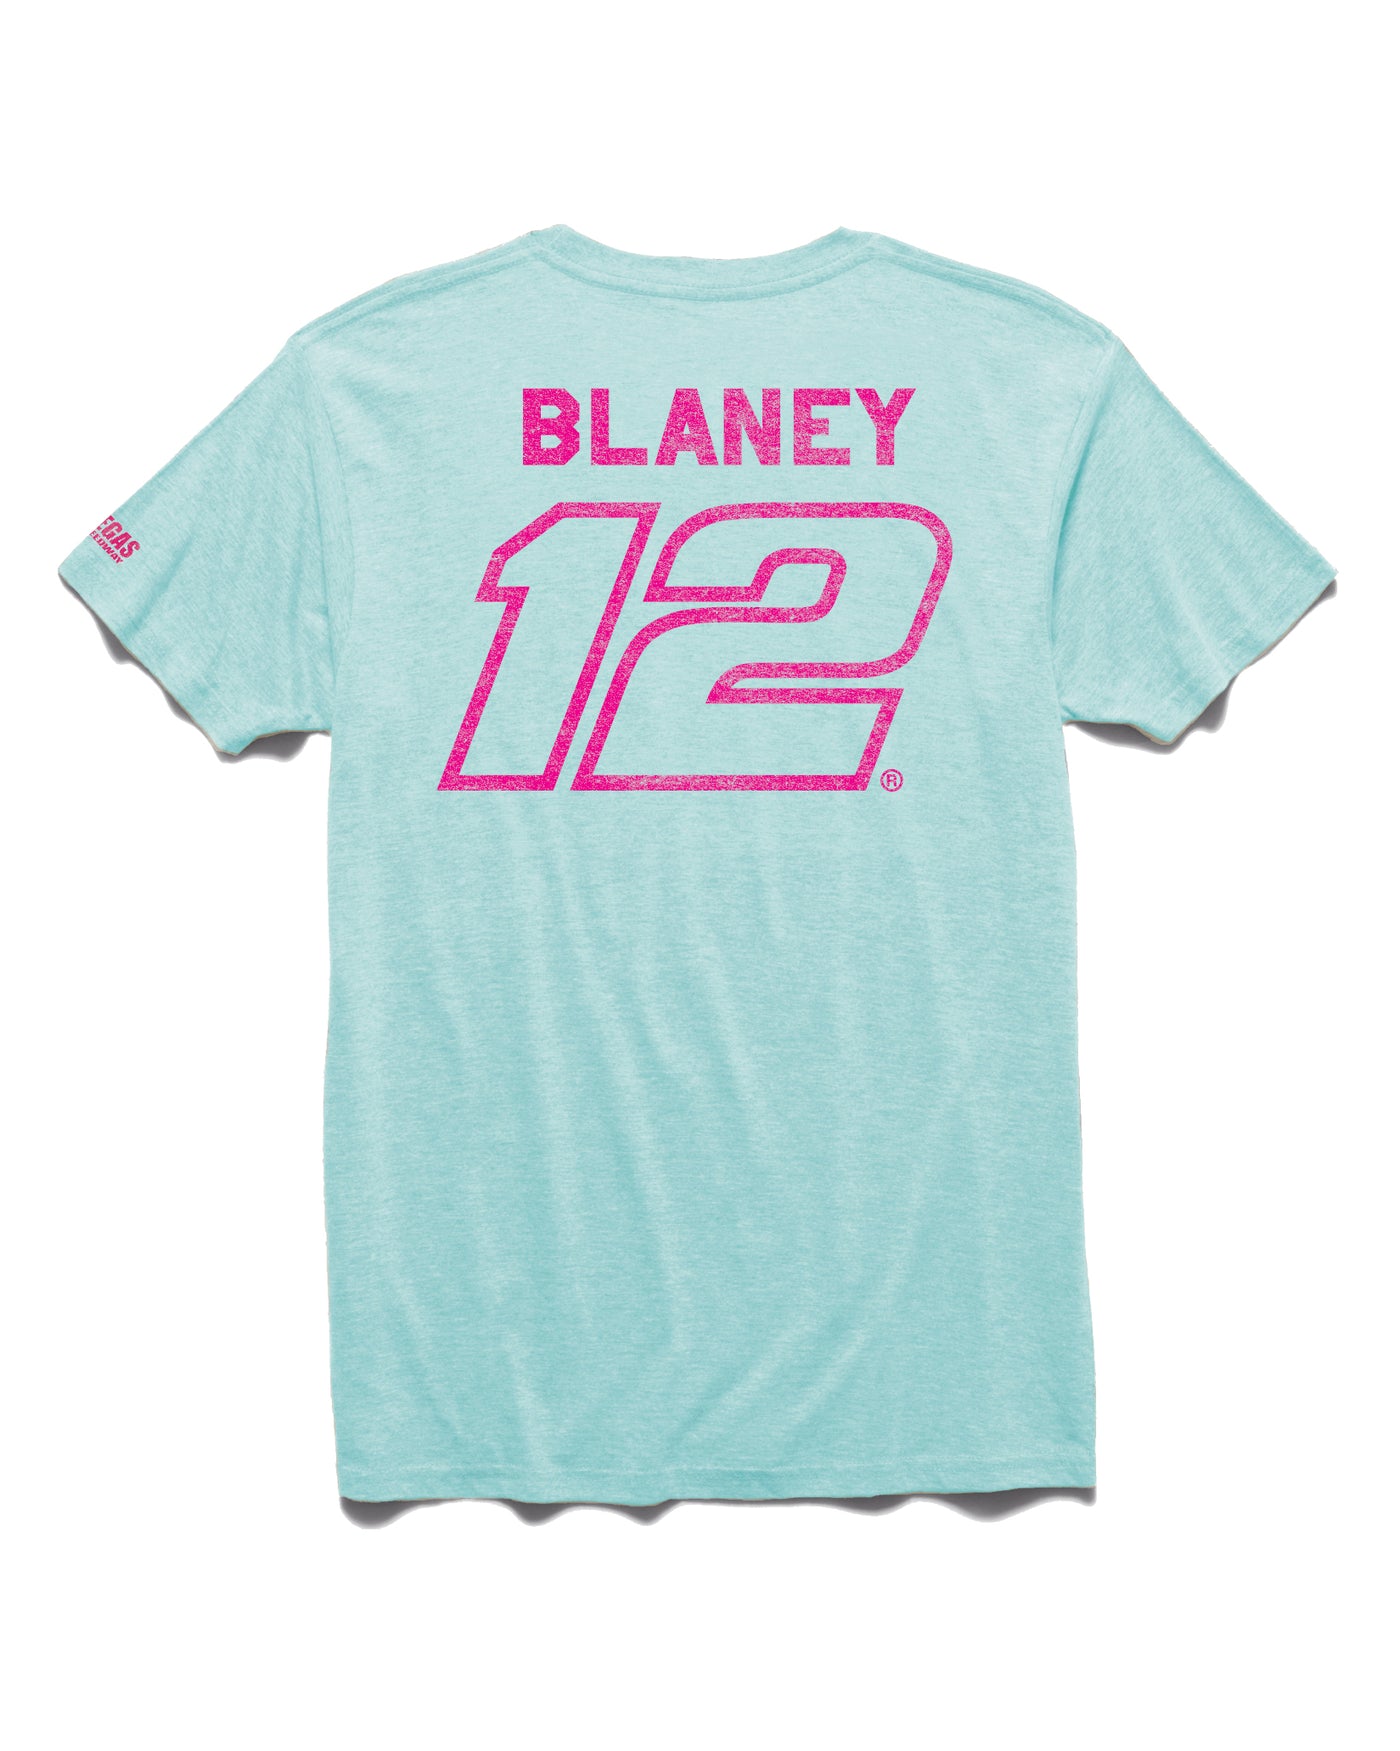 BLANEY #12 LAS VEGAS TEE